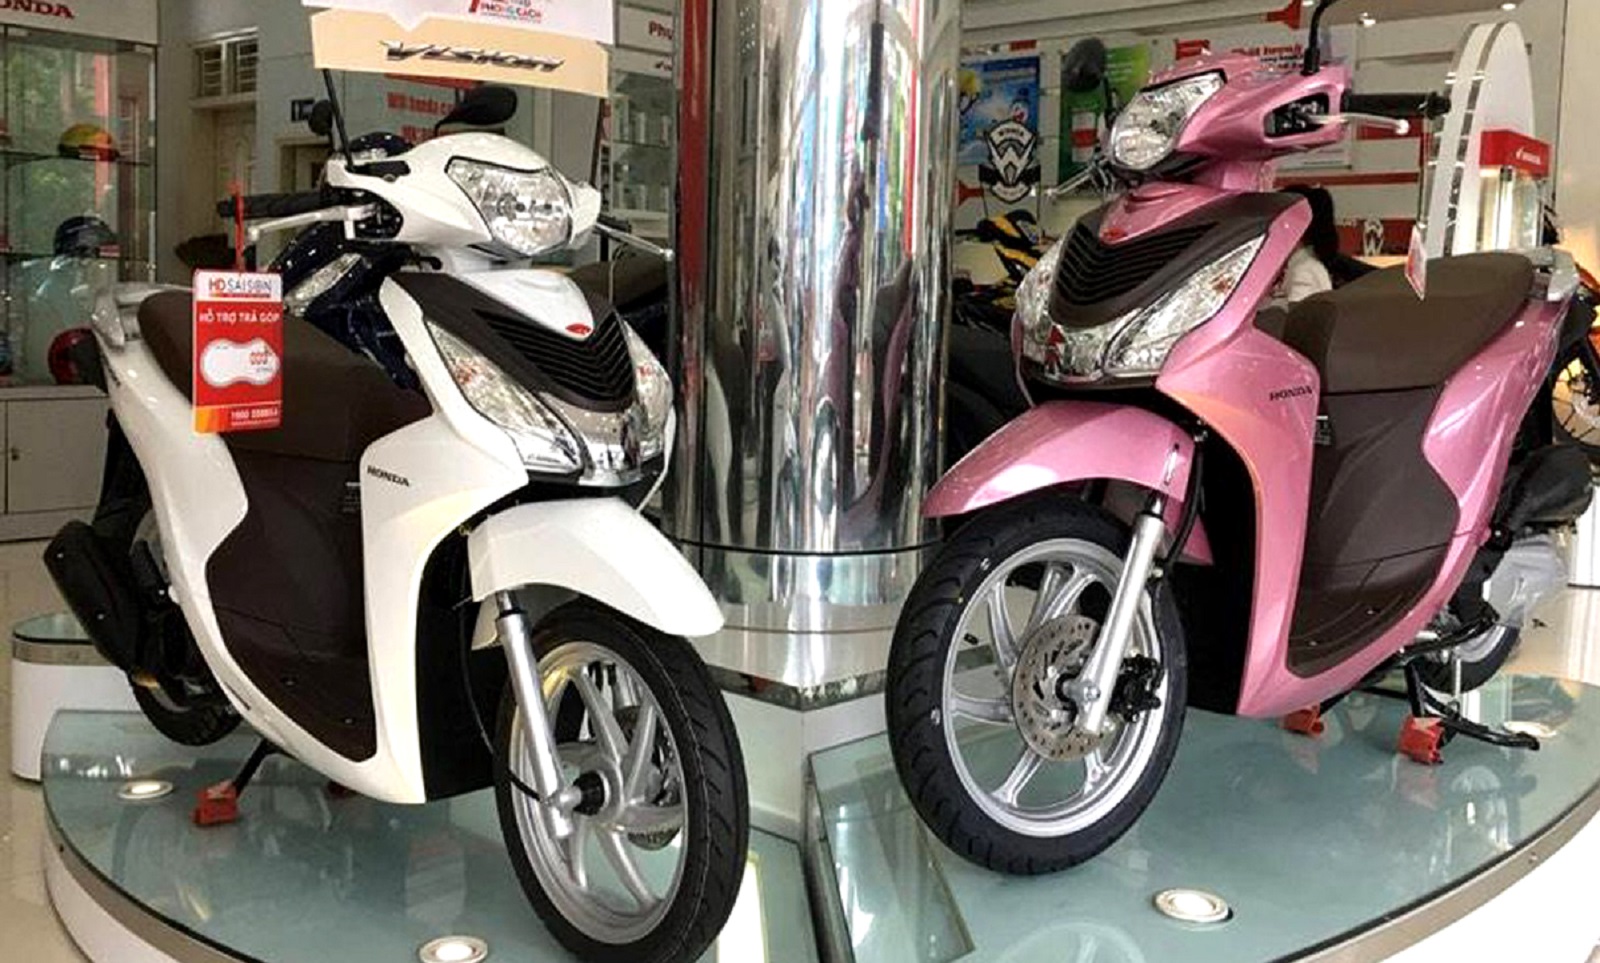 Cập nhật giá bán các mẫu xe máy Honda tại thị trường Việt - Ảnh 1.